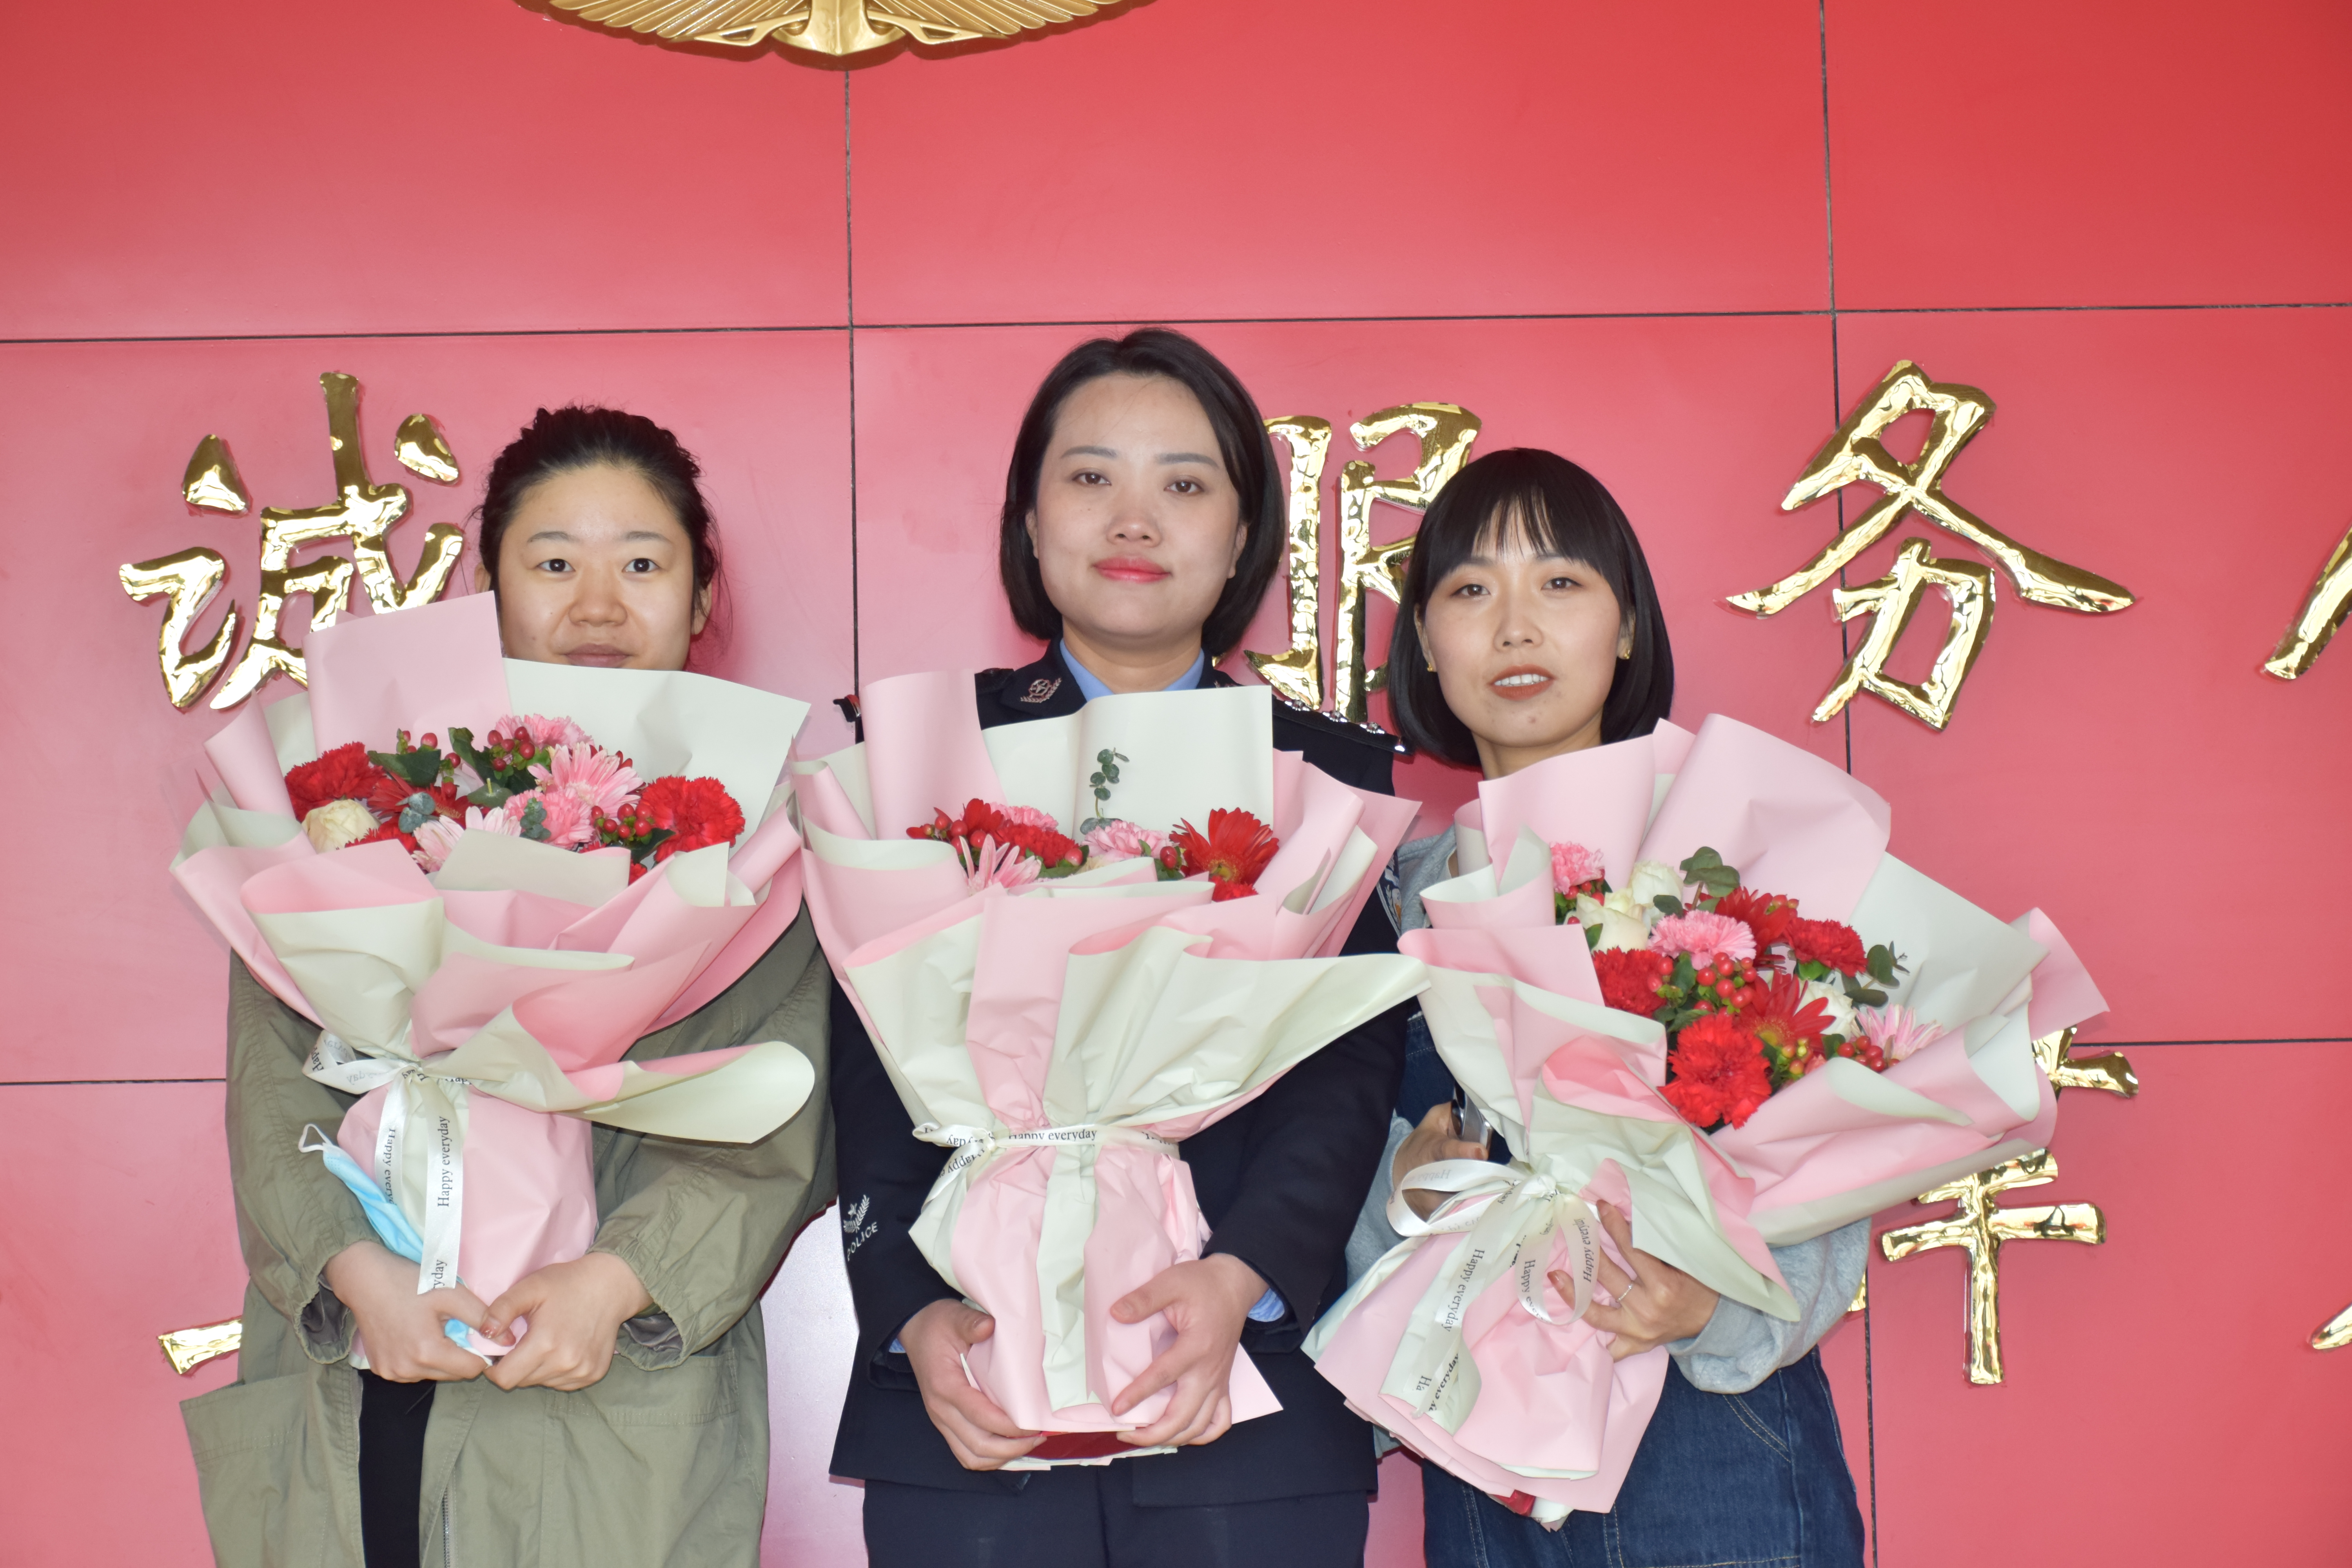 致敬平凡岗位上的她丨蒲城县公安局开展系列活动庆祝“三八”国际妇女节（图）